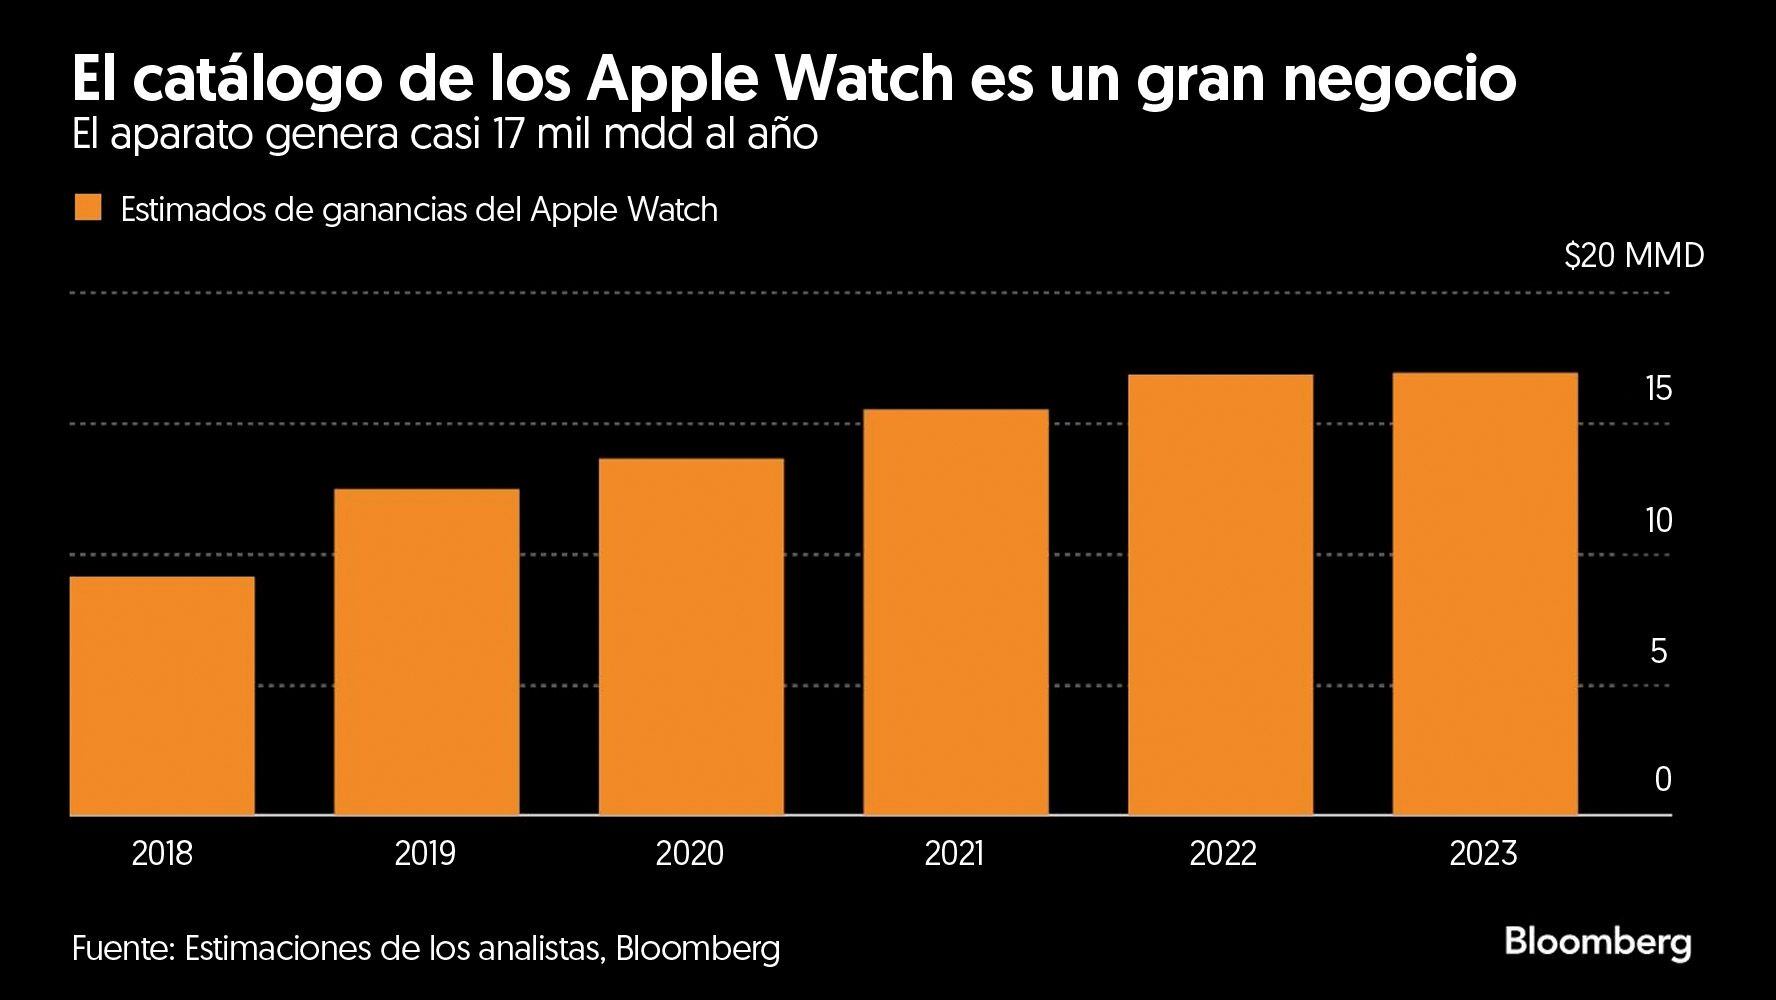 Las ganancias generadas por la venta de los Apple Watch lleva una tendencia ascendente.